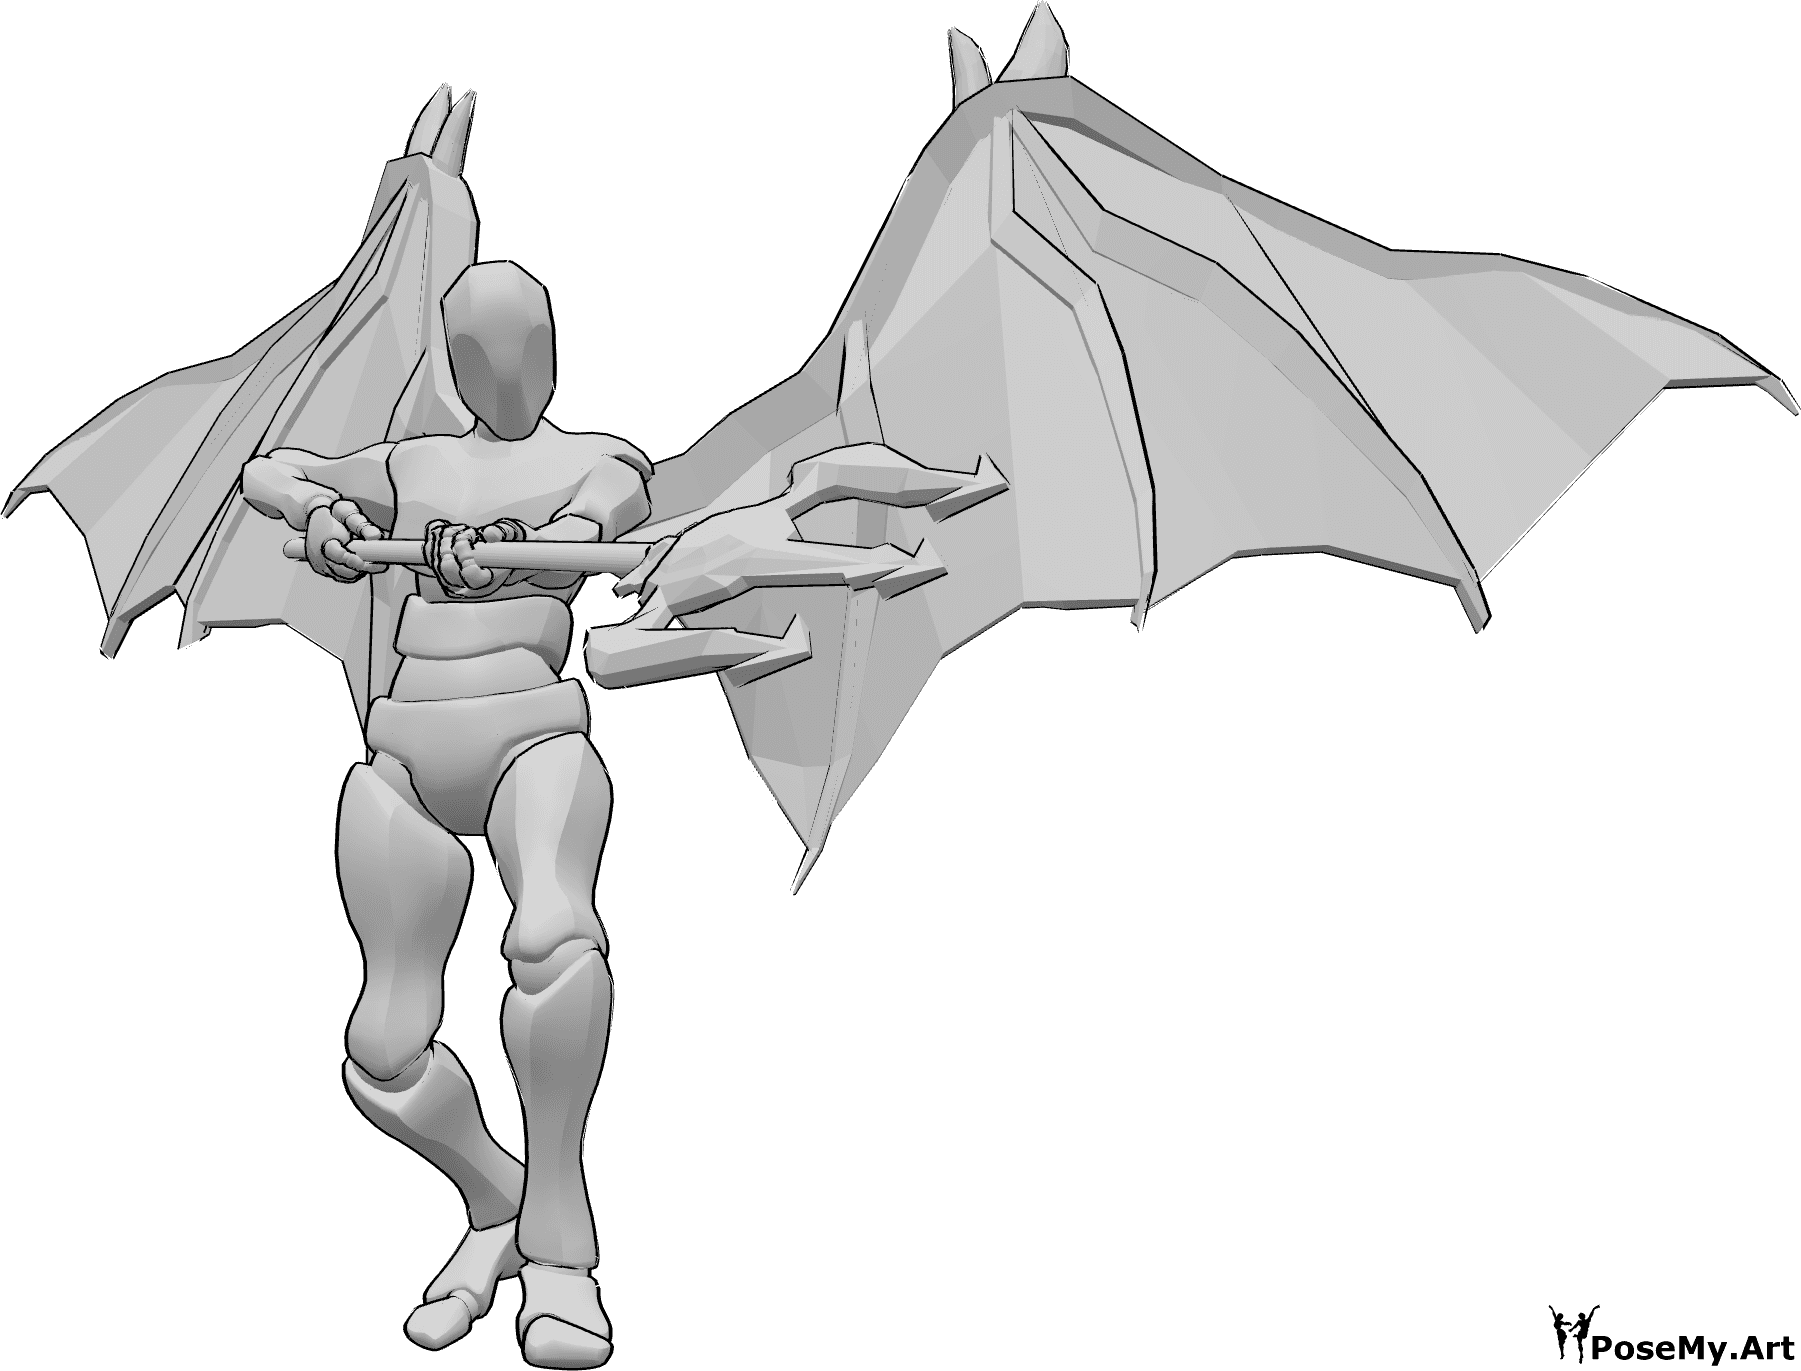 Posen-Referenz- Dämon in Dreizack-Pose - Männchen mit Teufelsflügeln will mit seinem Dreizack angreifen, hält ihn mit beiden Händen und zielt nach unten